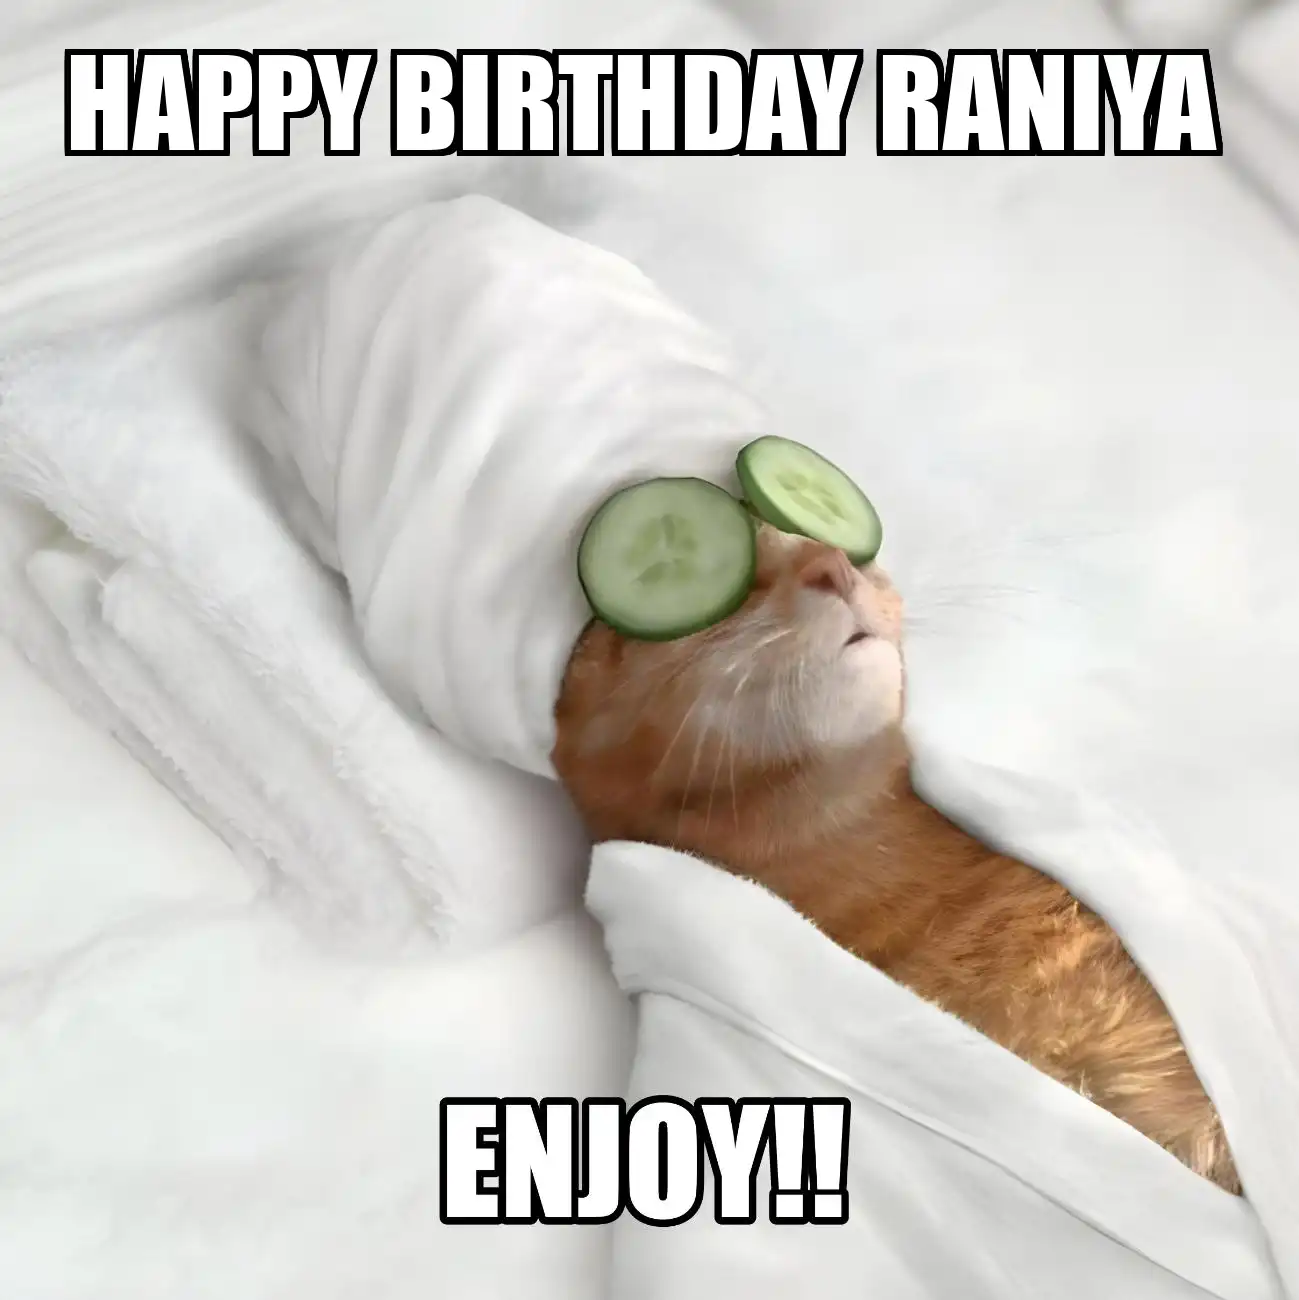 Happy Birthday Raniya Enjoy Cat Meme